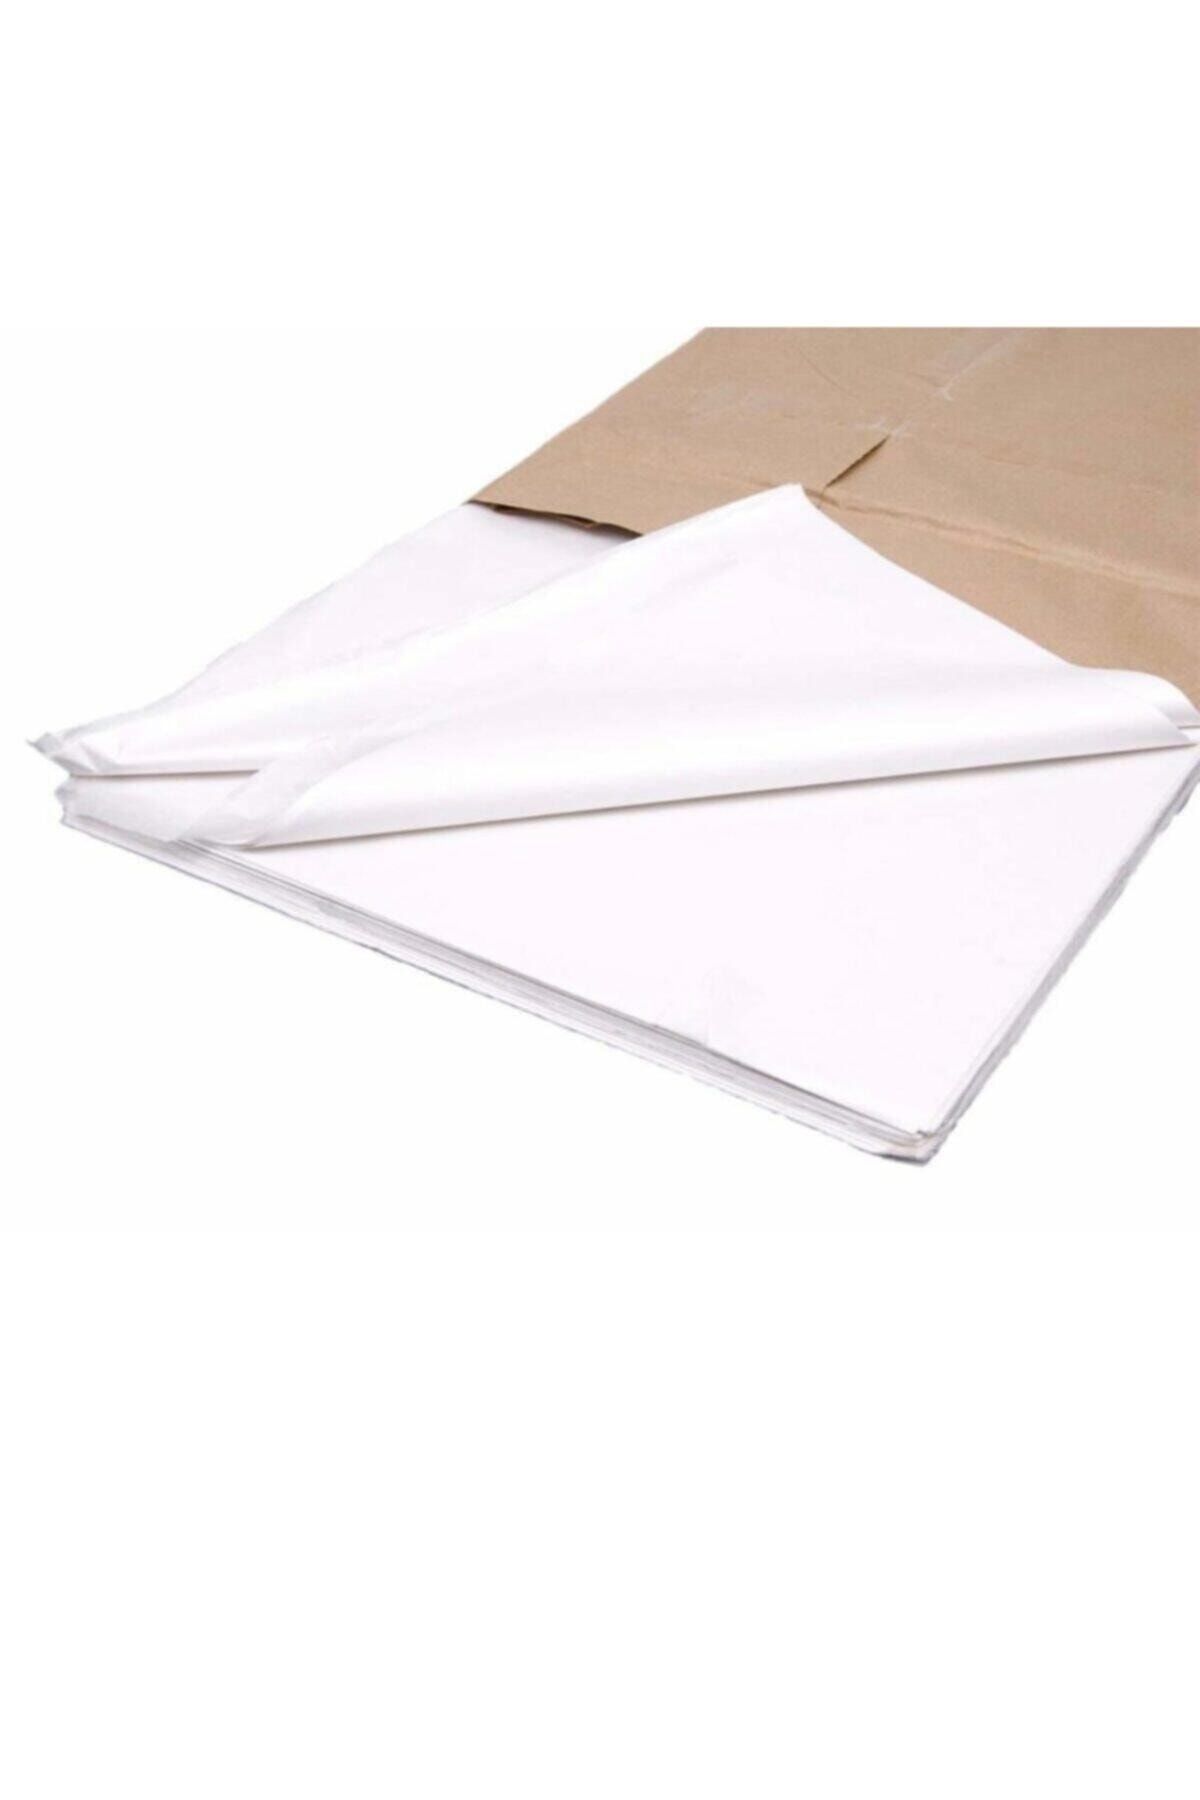 Ambalaj Atölyesi Beyaz Pelur Kağıt Hediye Paketleme Ambalaj Kağıdı 100x70 Cm Boy 100 Adet